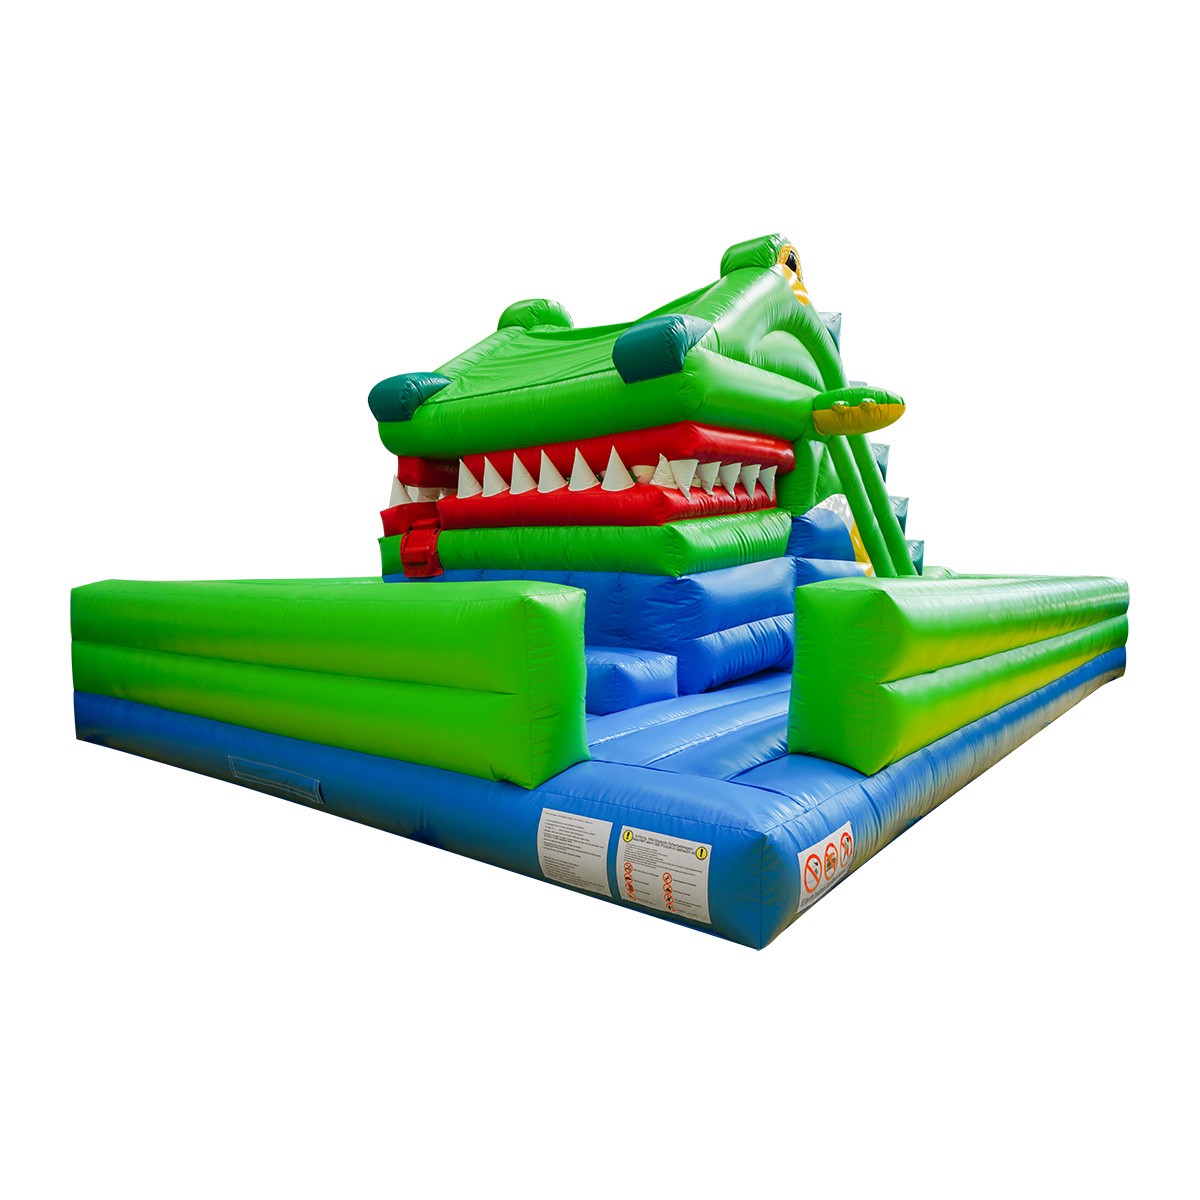 Надувной замок из крокодилаYG-99